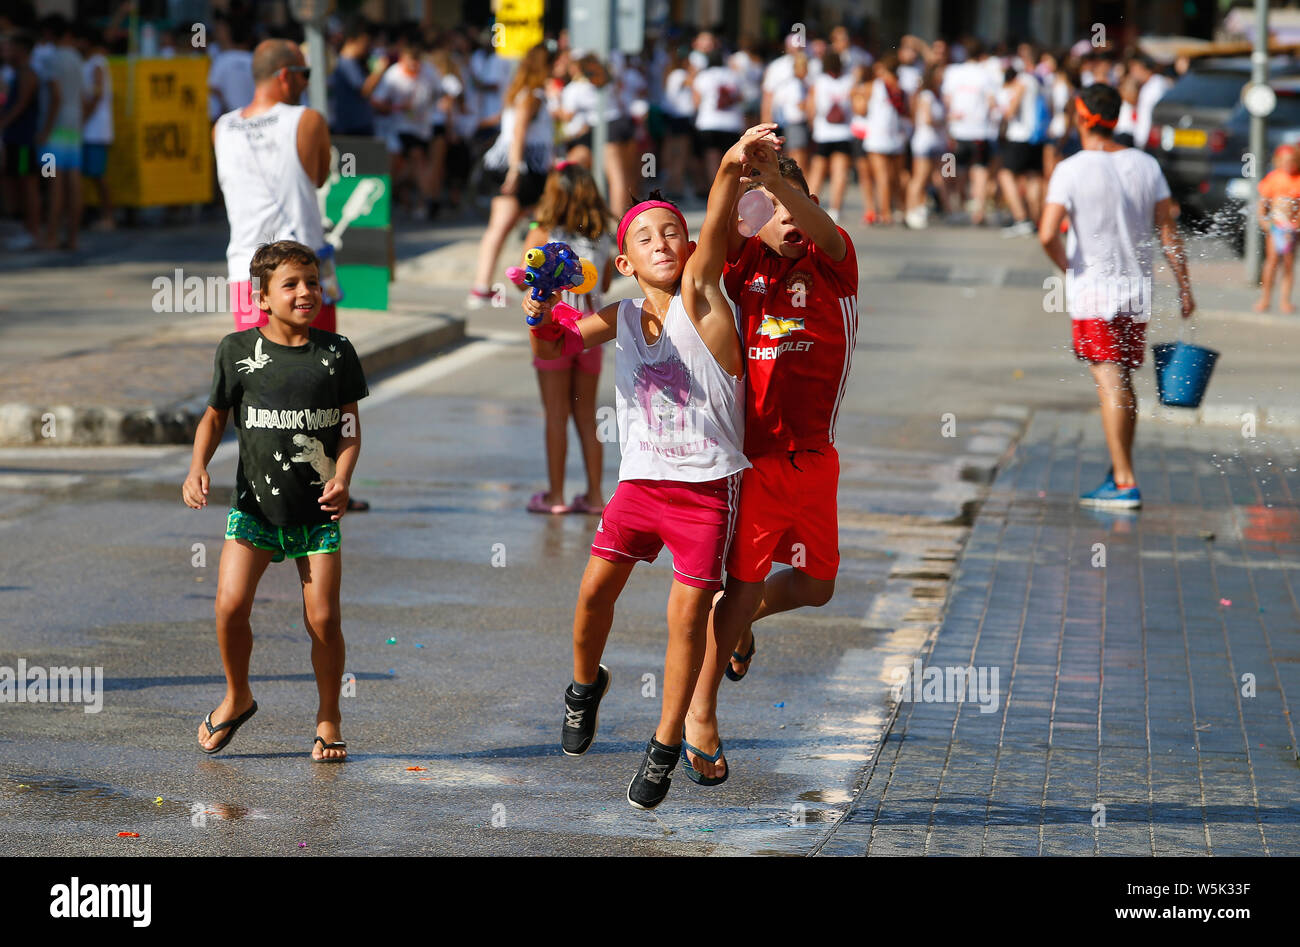 Majorque / Santa Maria, Espagne - 20 juillet 2019 : les habitants jouissent des festivités d'été traditionnels y compris une bataille mondiale de l'eau entre le plus jeune vi Banque D'Images